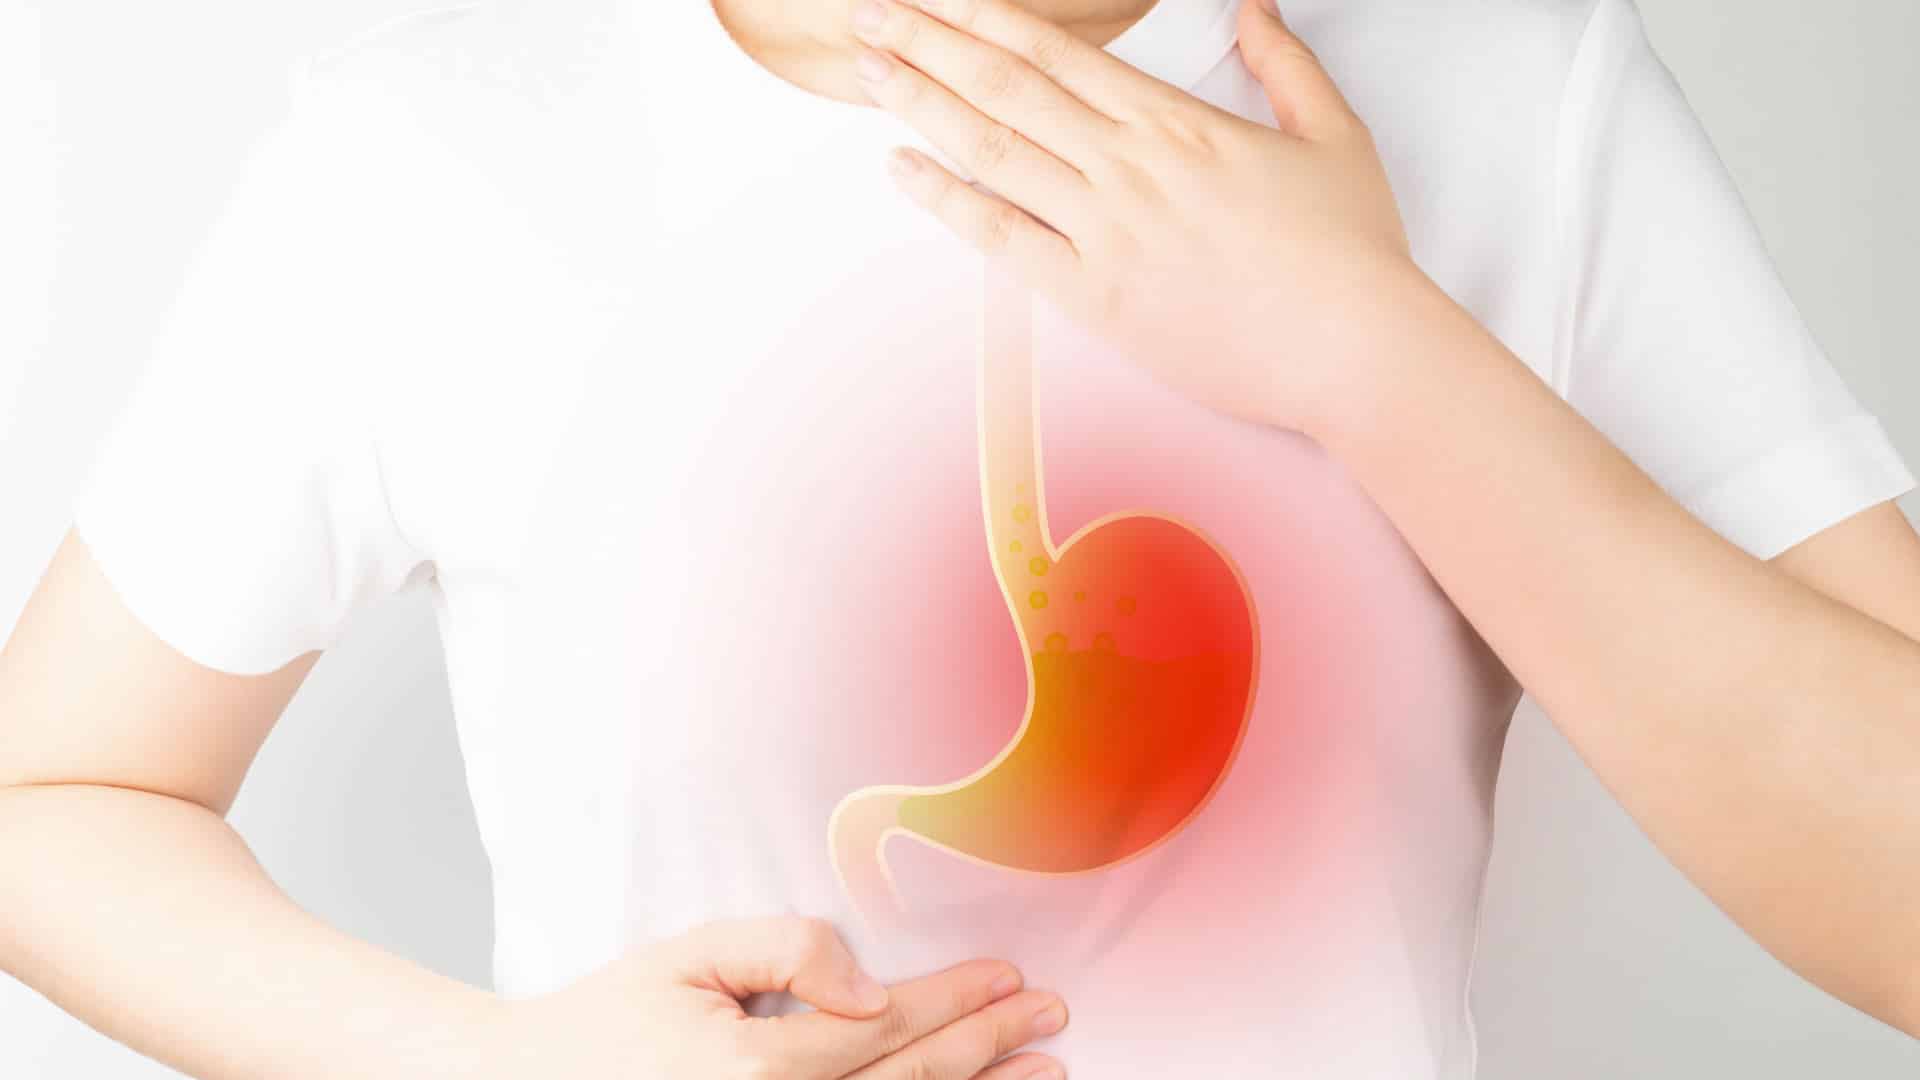 Quais as diferenças entre refluxo gastroesofágico e gastrite?